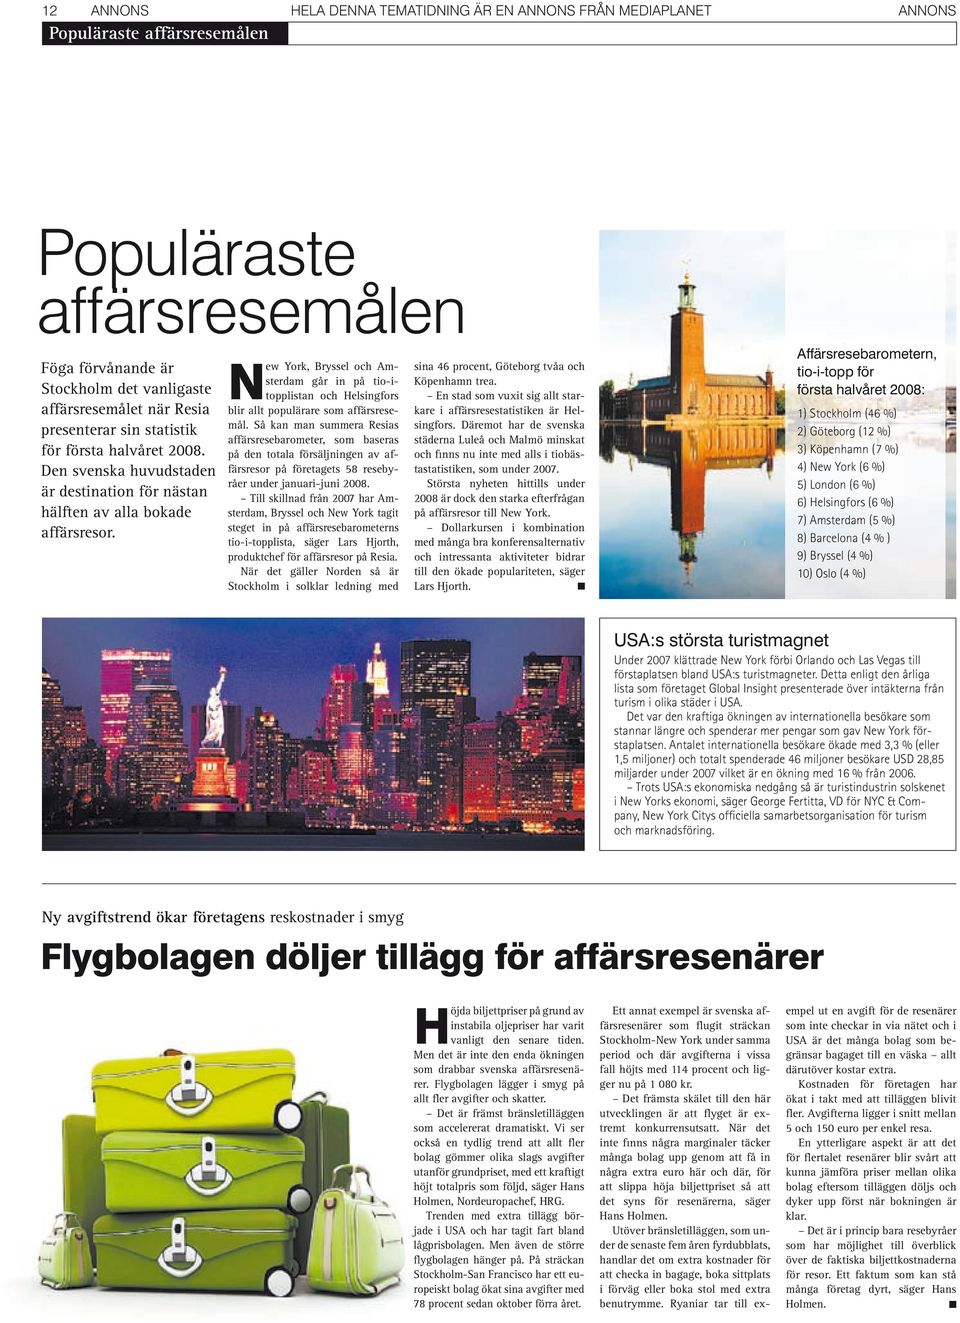 New York, Bryssel och Amsterdam går in på tio itopplistan och Helsingfors blir allt populärare som affärsresemål.